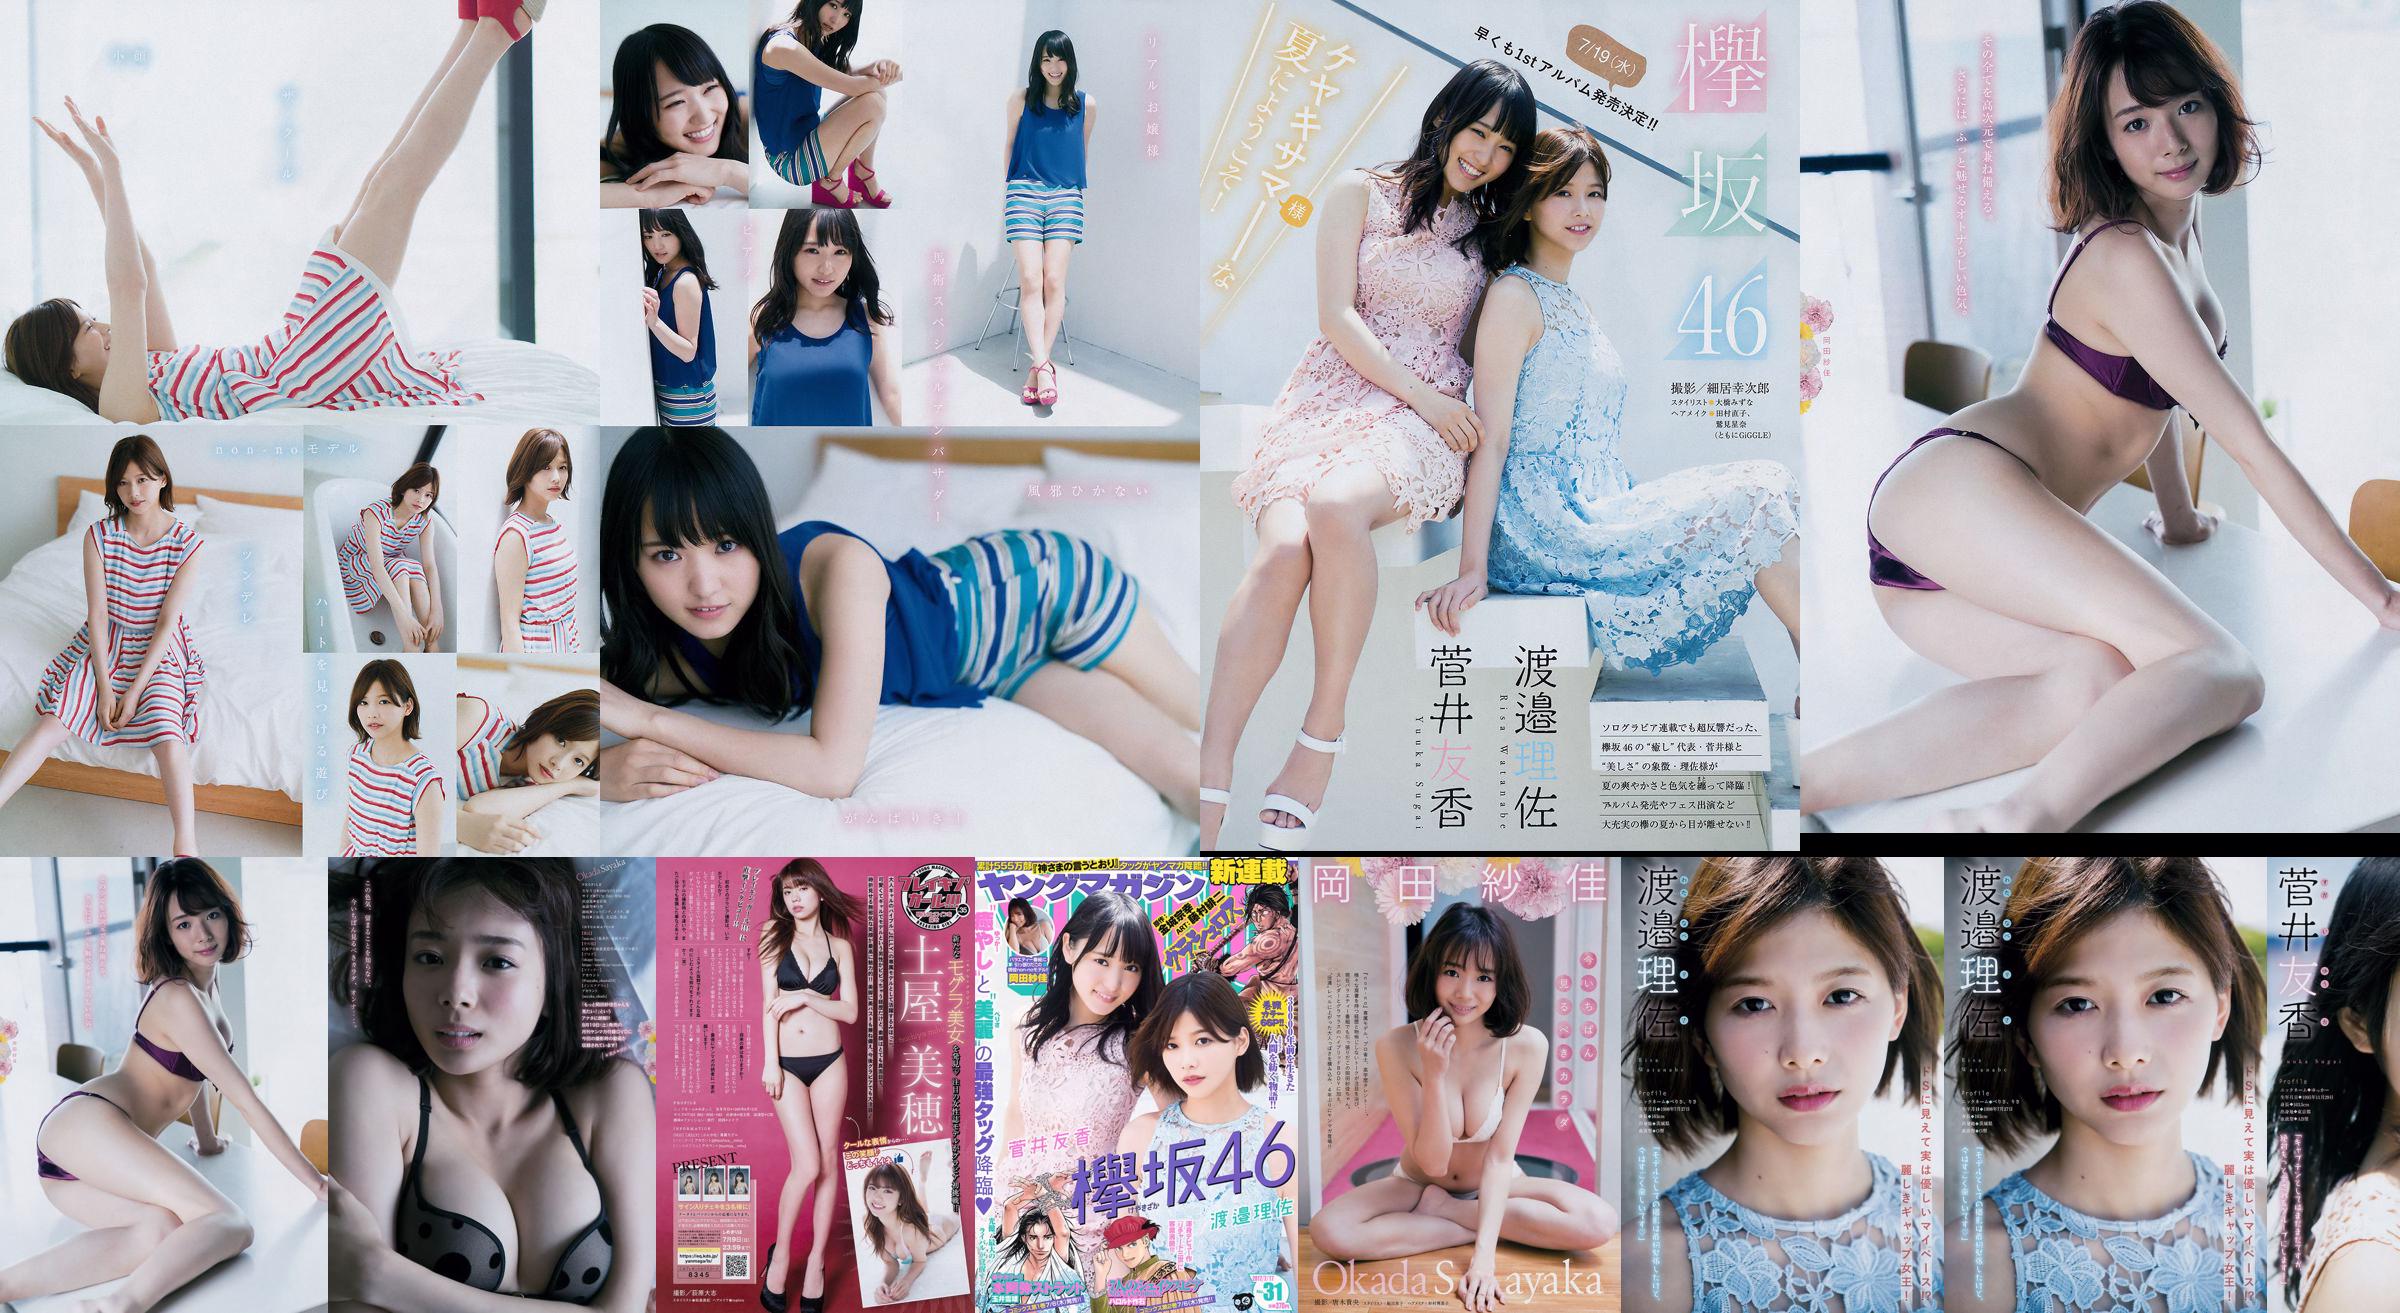 [Young Magazine] Watanabe Risa, Sugai Yuka, Okada Saika 2017 No.31 Photo Magazine No.99762f Pagina 1